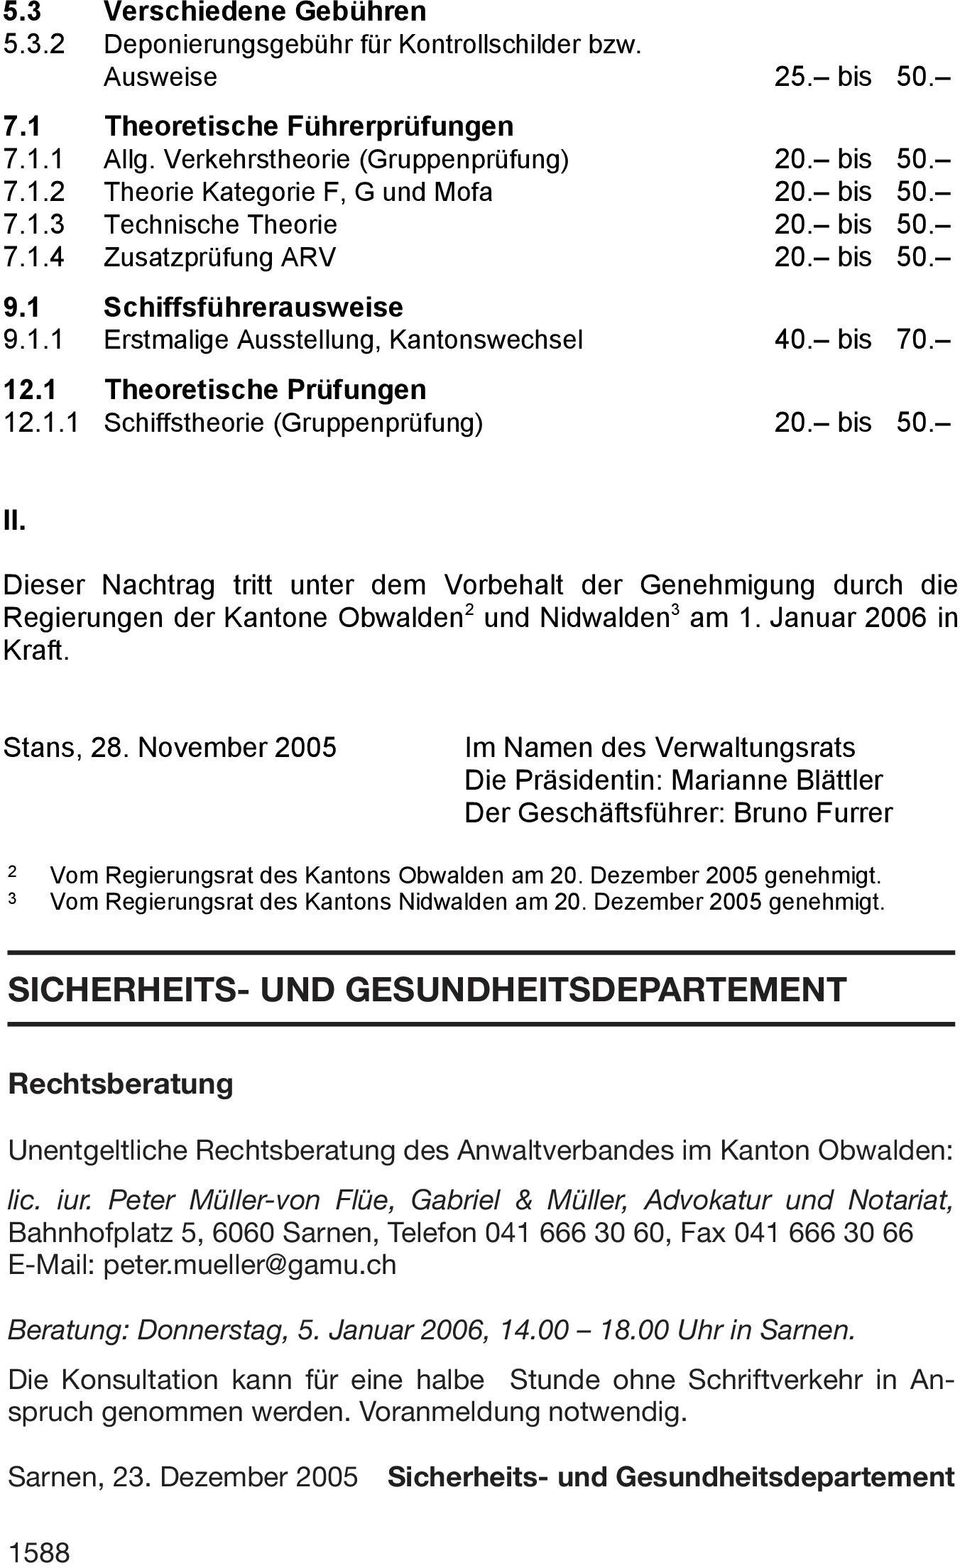 bis 50. II. Dieser Nachtrag tritt unter dem Vorbehalt der Genehmigung durch die Regierungen der Kantone Obwalden 2 und Nidwalden 3 am 1. Januar 2006 in Kraft. Stans, 28.